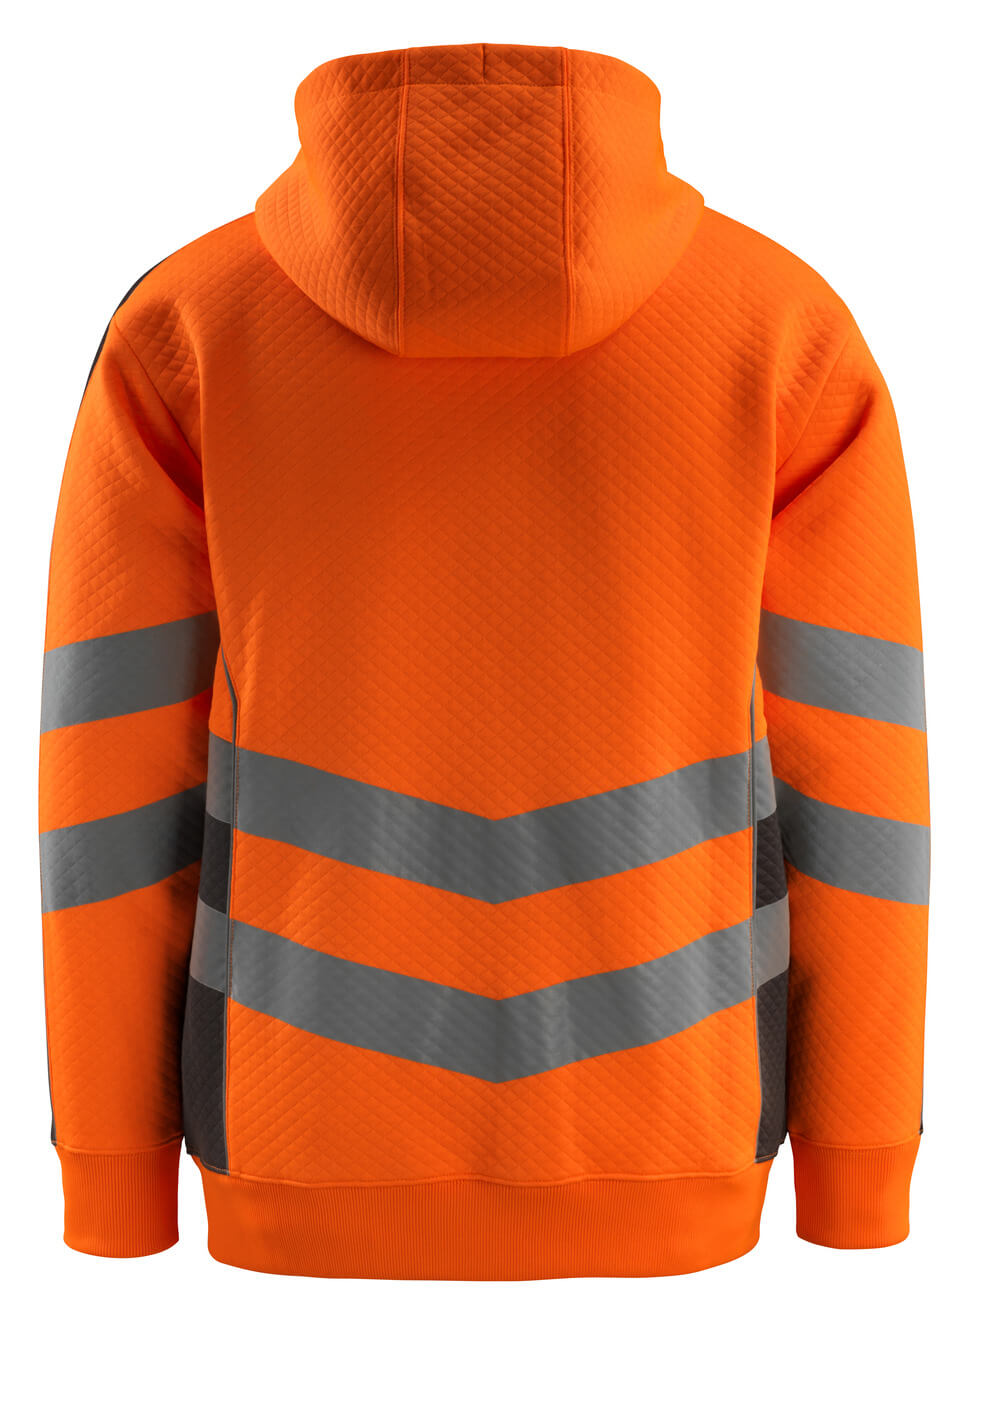 Kapuzensweatshirt mit Rei?verschluss SAFE SUPREME Kapuzensweatshirt mit Rei?verschluss in Farbe Hi-vis Orange/Dunkelanthrazit